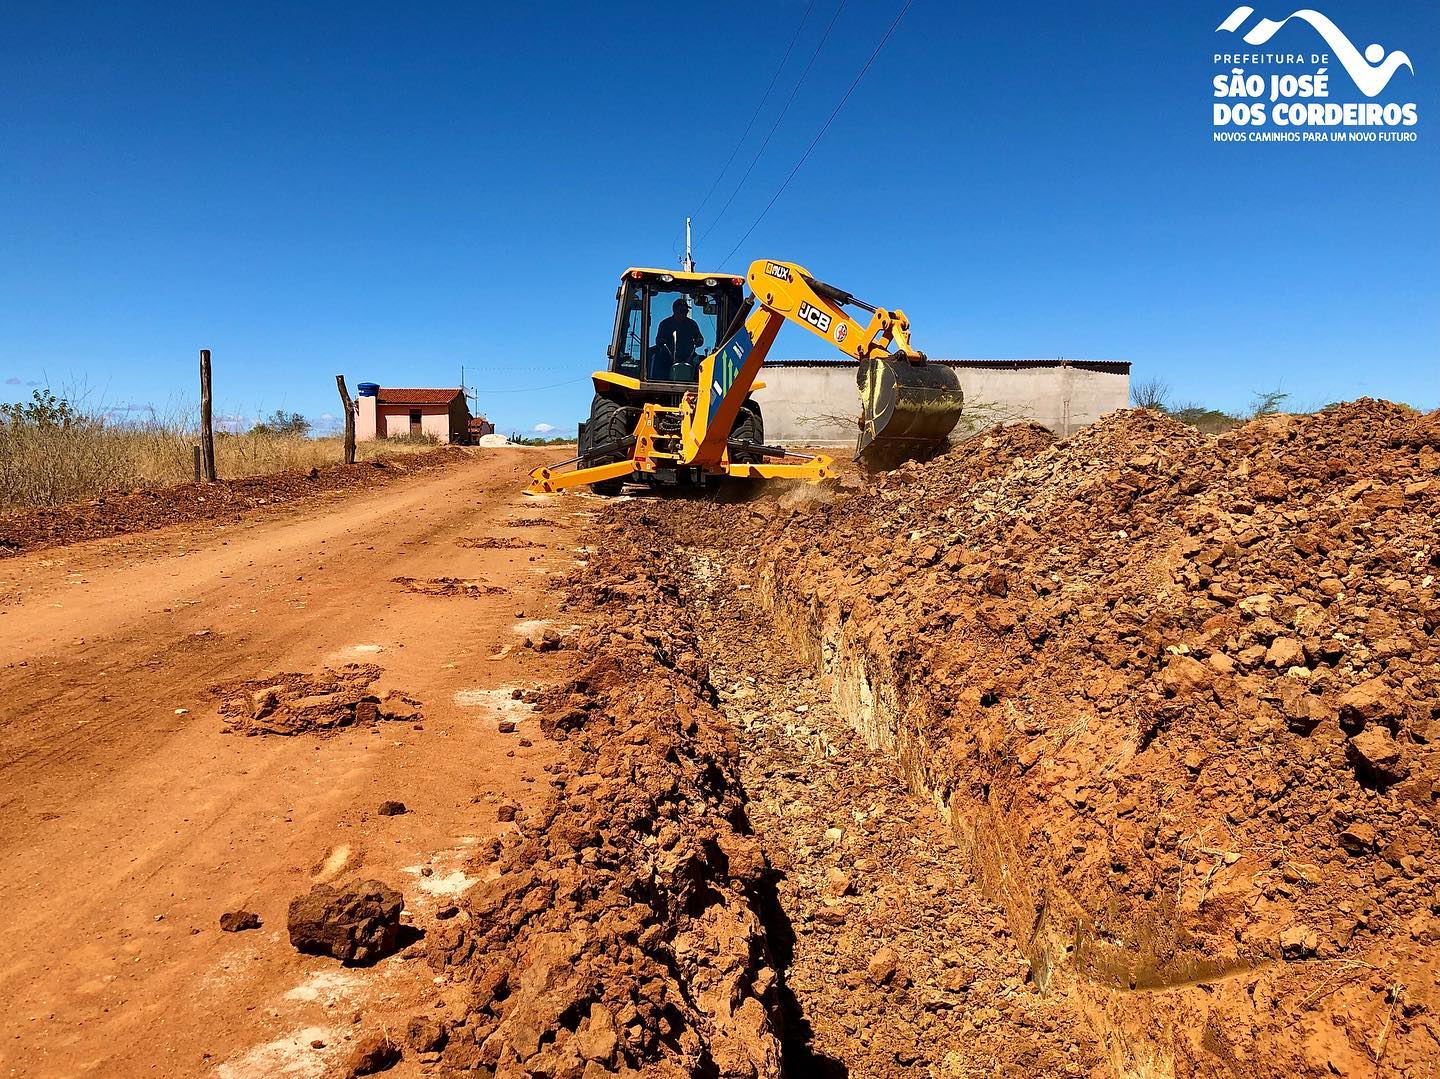 Após solicitação da Prefeitura Municipal, Cagepa realiza extensão de rede de abastecimento no sítio Retiro em São José dos Cordeiros  